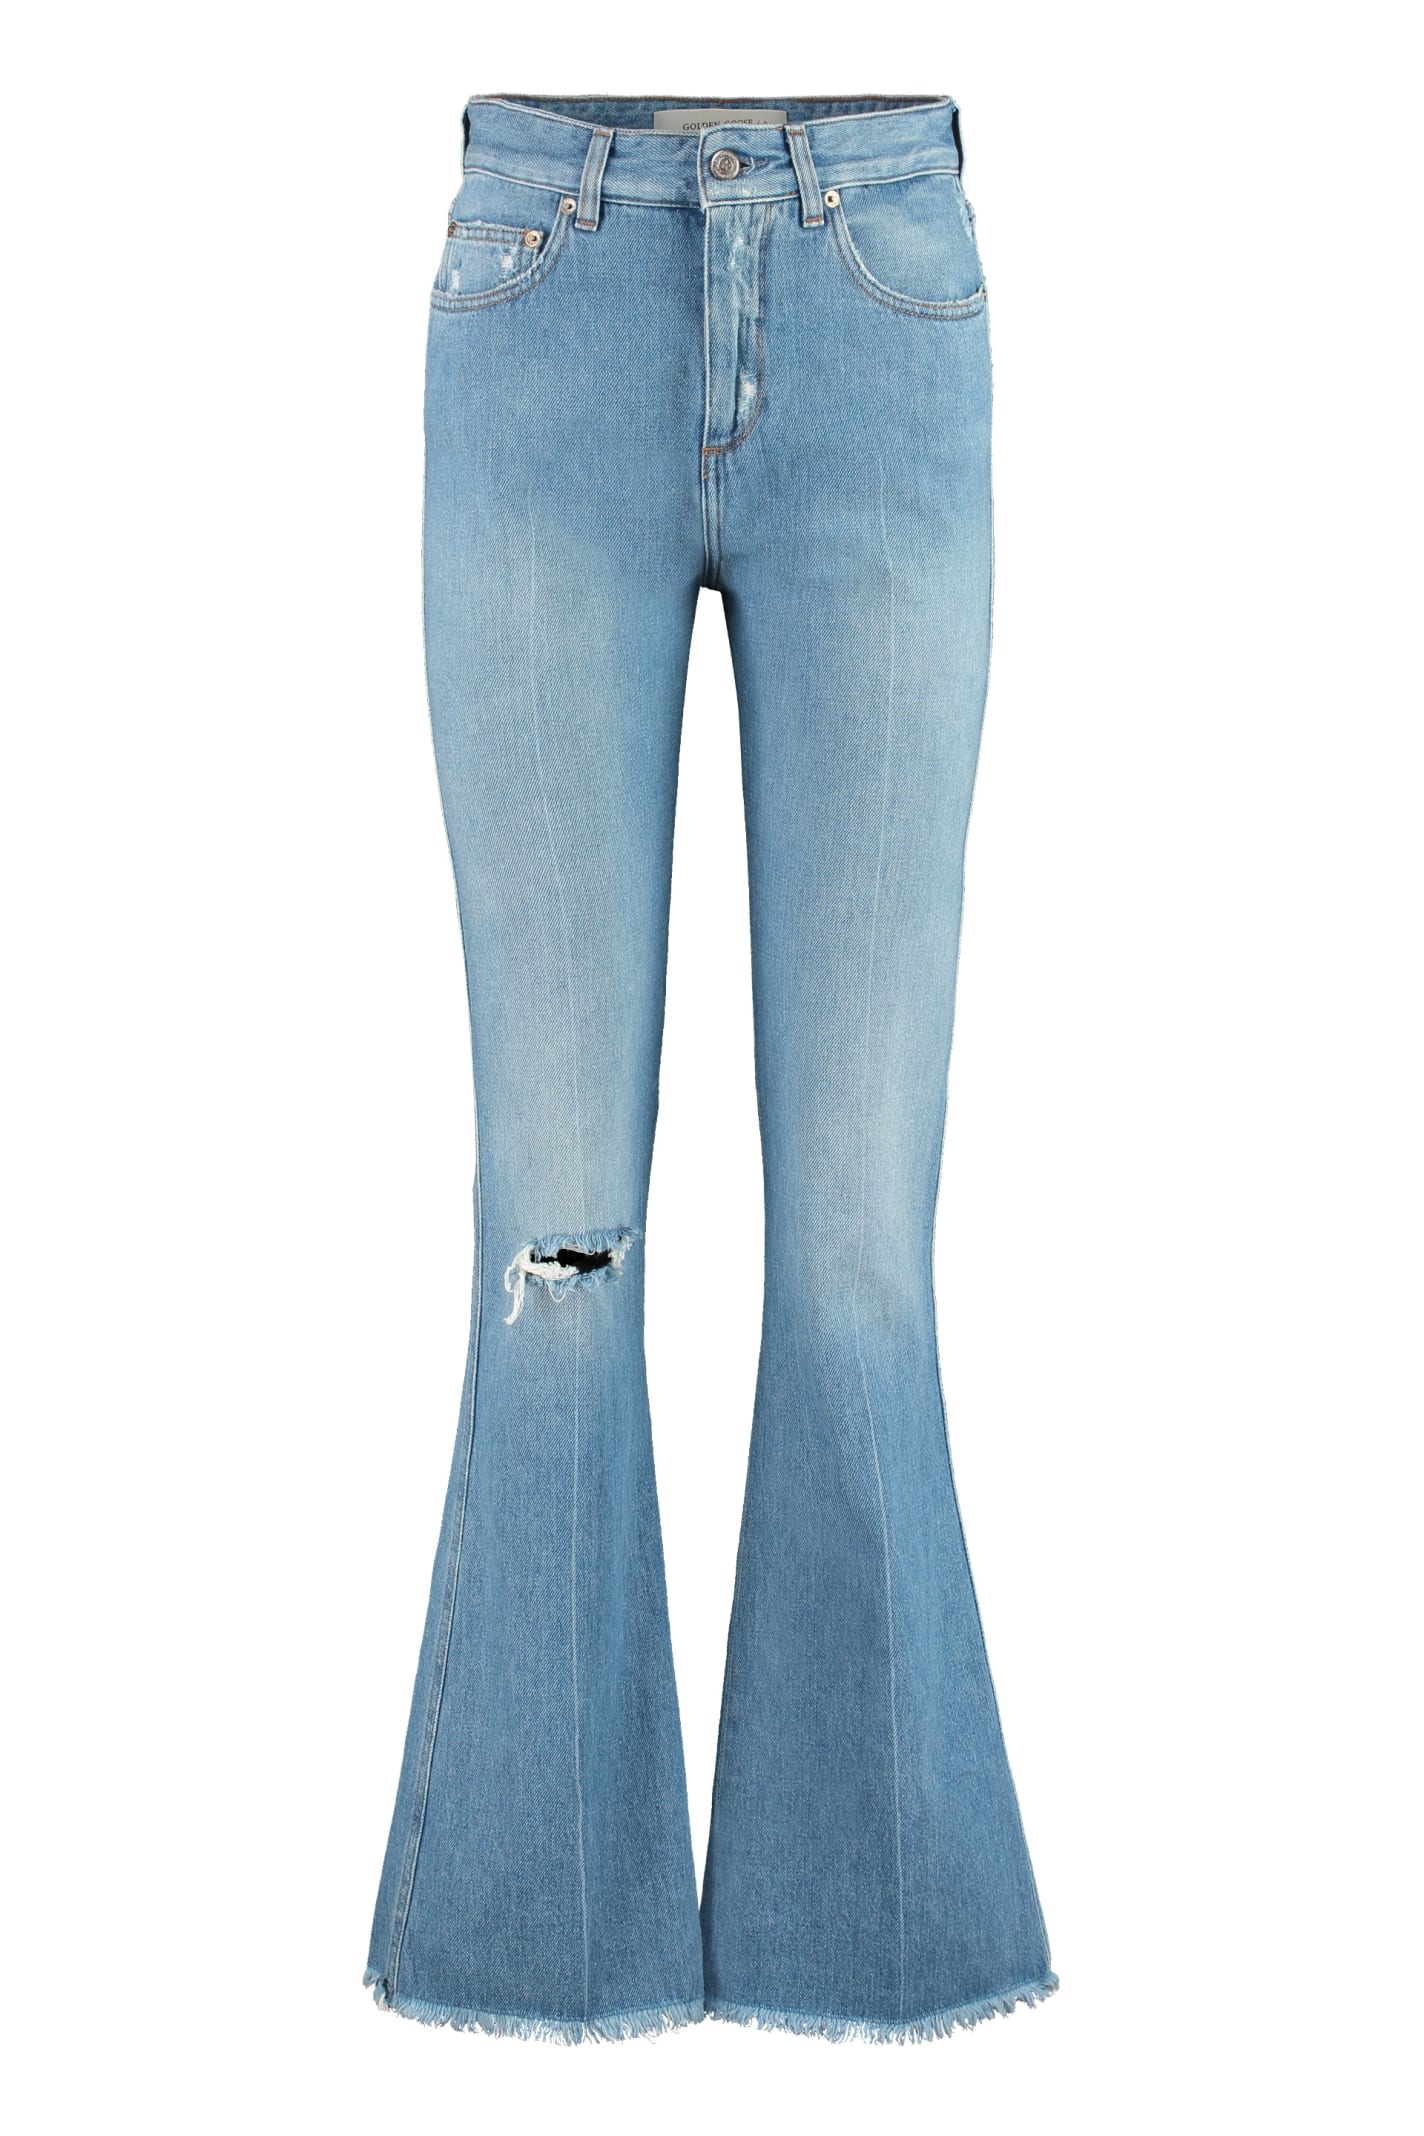 Golden Goose 5-pocket Jeans